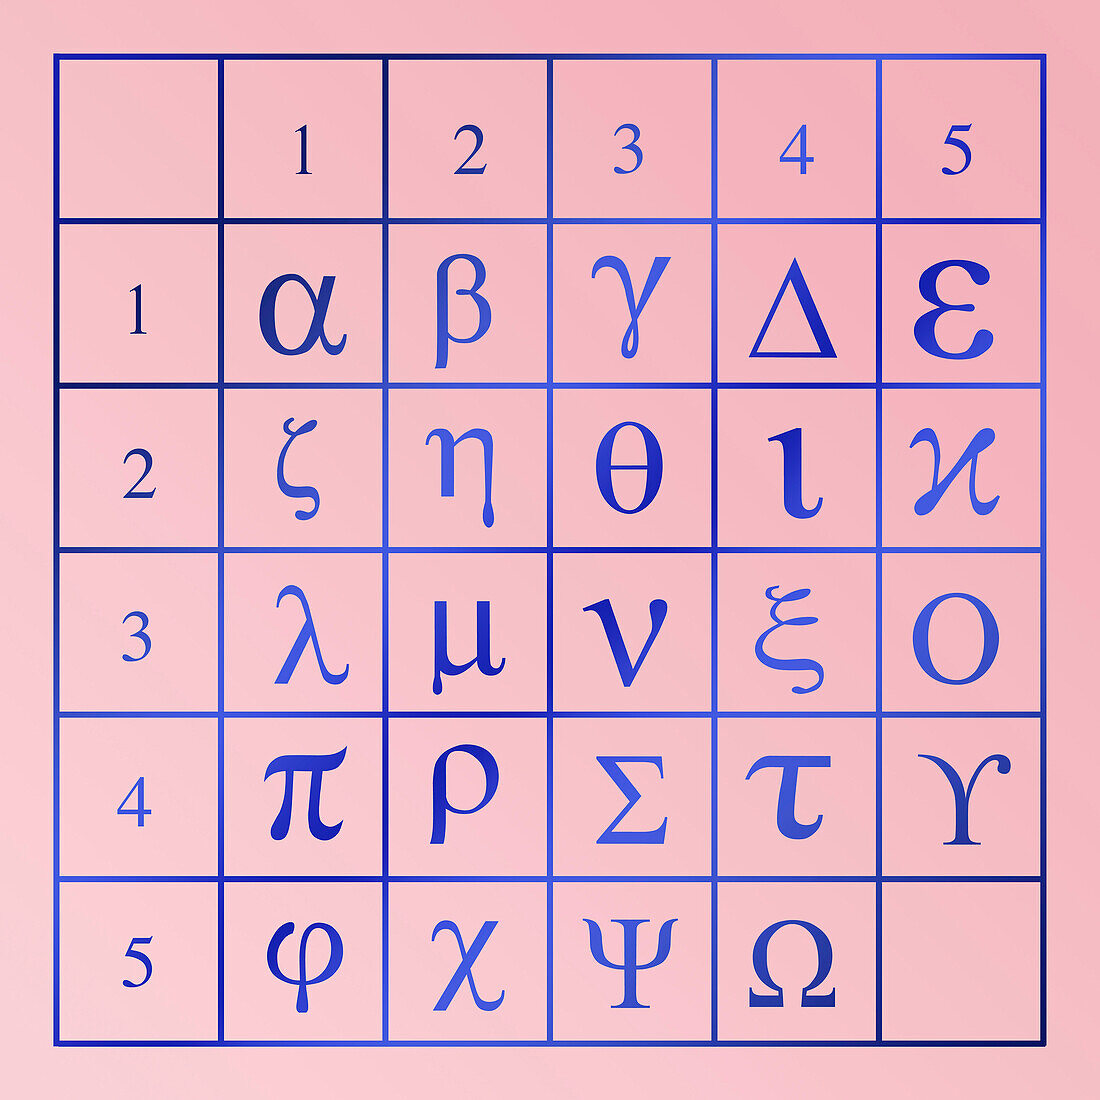 Polybius squares for encryption, illustration